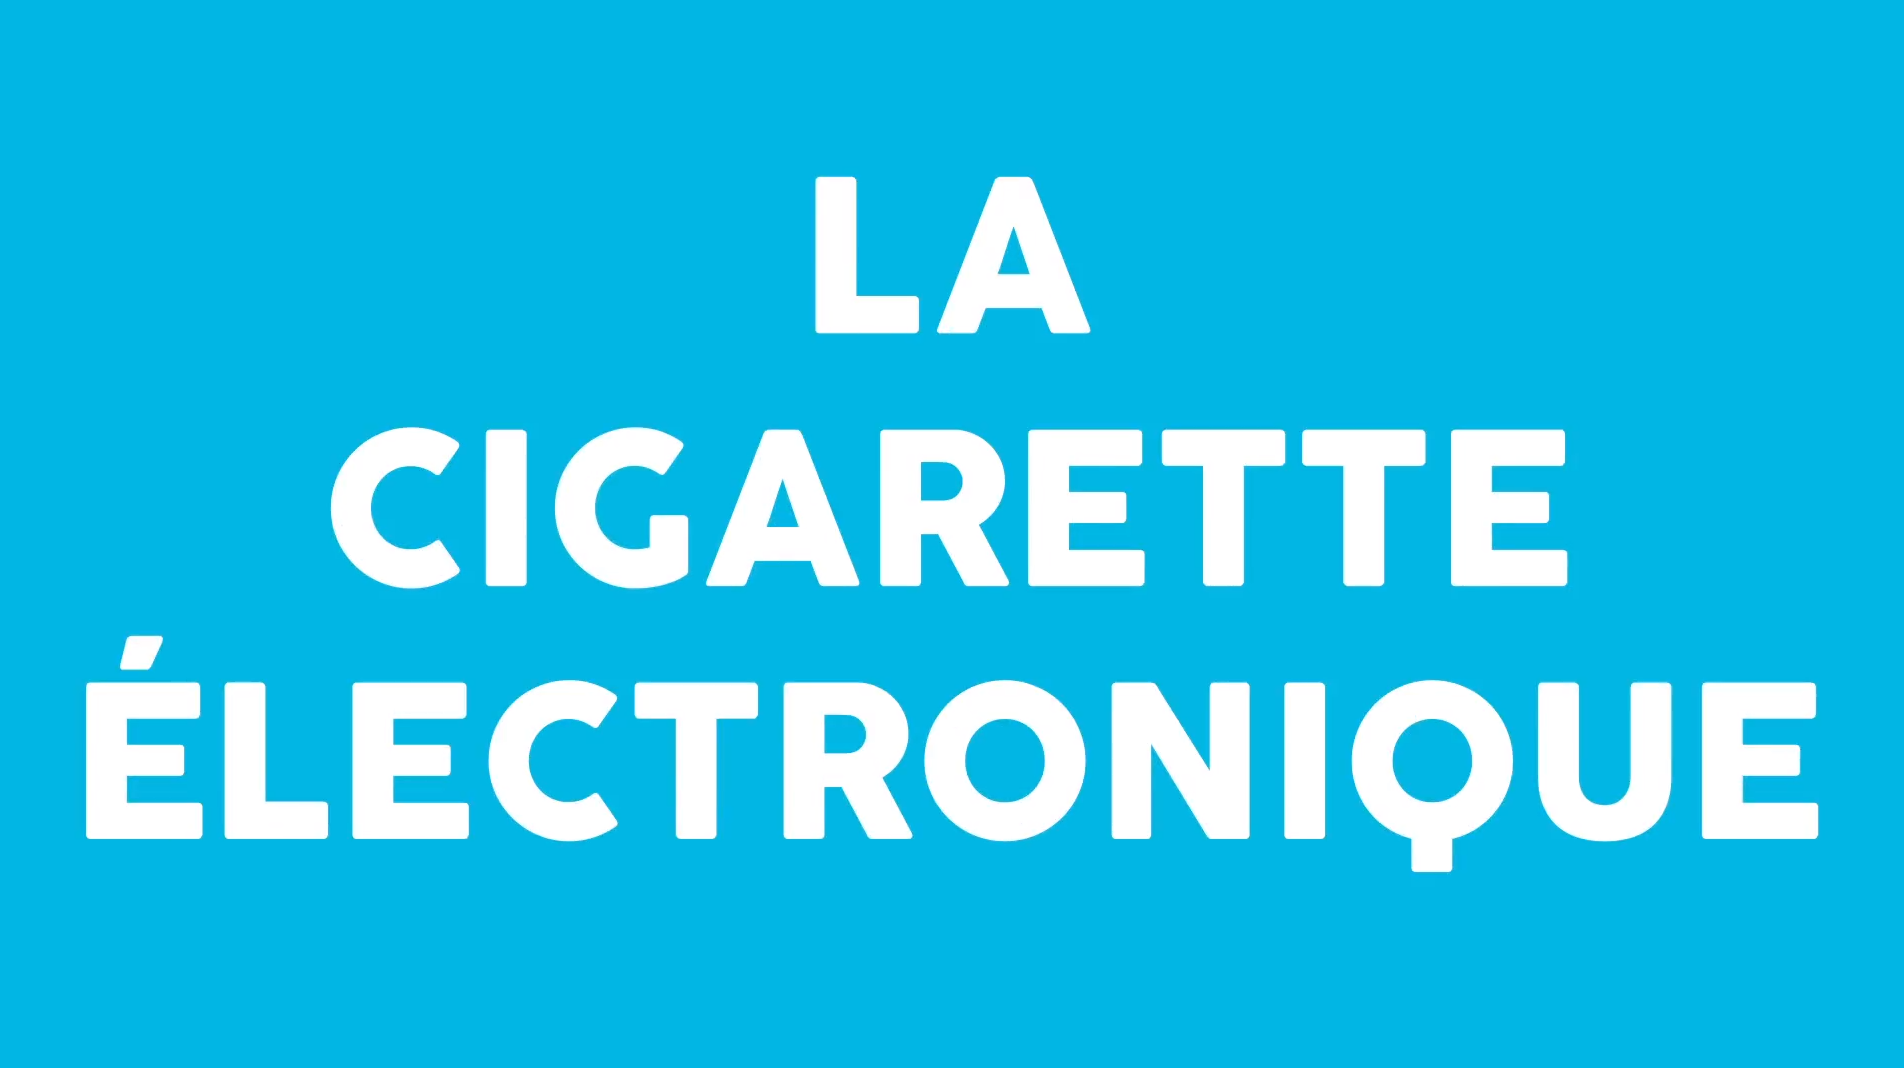 Cigarette Electronique Motion Design